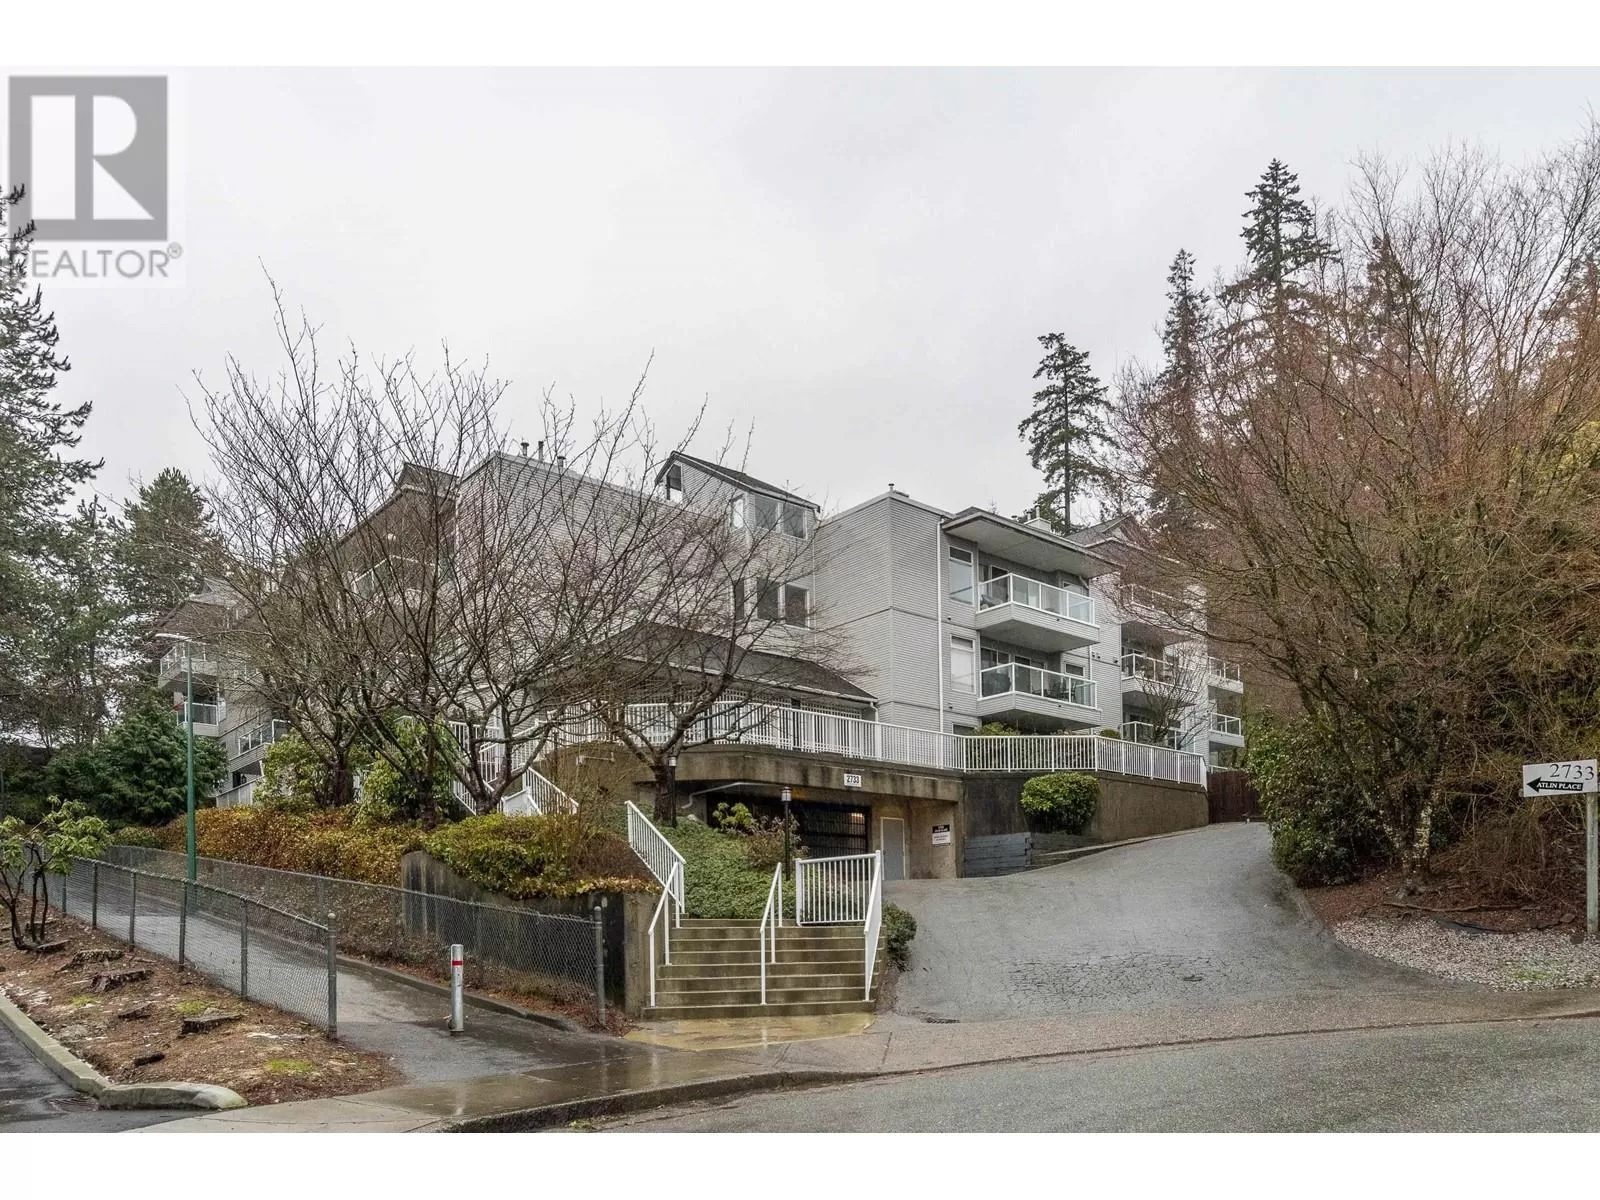 Apartment for rent: 202 2733 Atlin Place, Coquitlam, British Columbia V3C 5B1